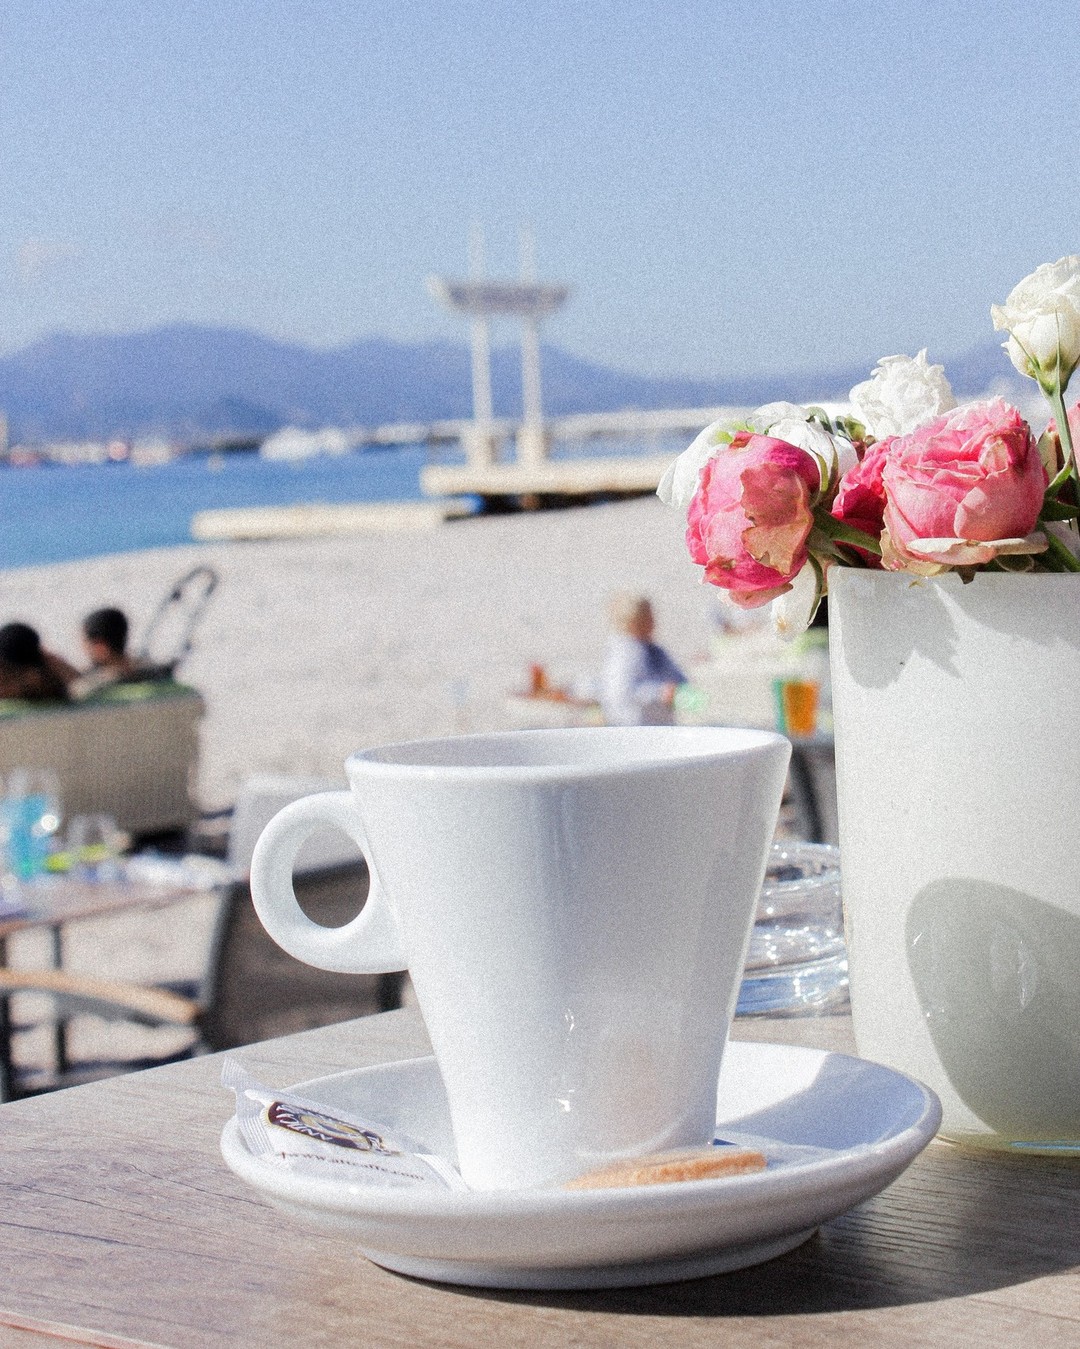 Good morning #Cannes ☀️ Notre nouvelle carte #Summer22 arrive cette semaine 🤩 #StayTuned ...
_
Boulevard de la Croisette, Cannes
04.93.43.67.05
contact@vegaluna.fr
www.vegaluna.fr  #food #restaurant #coffee #plage #frenchriviera